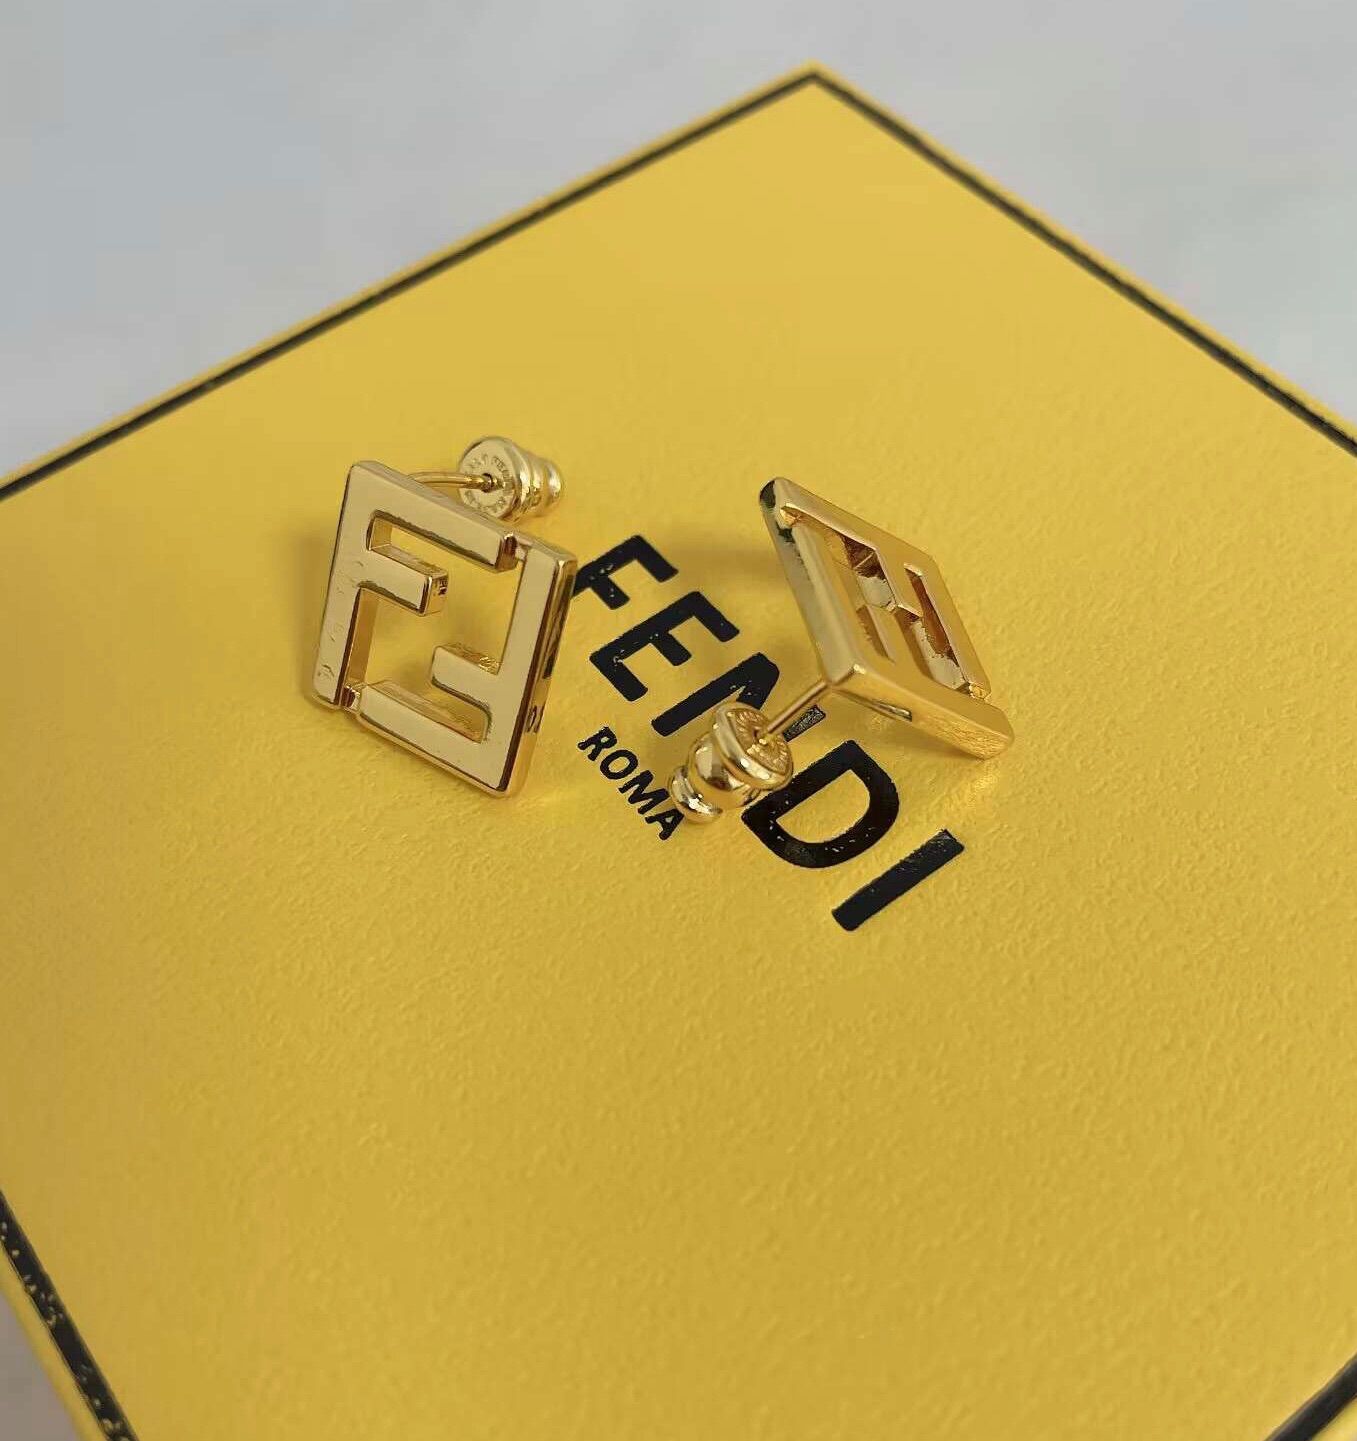 FENDI logo イヤリング   いちごショップ   メルカリ